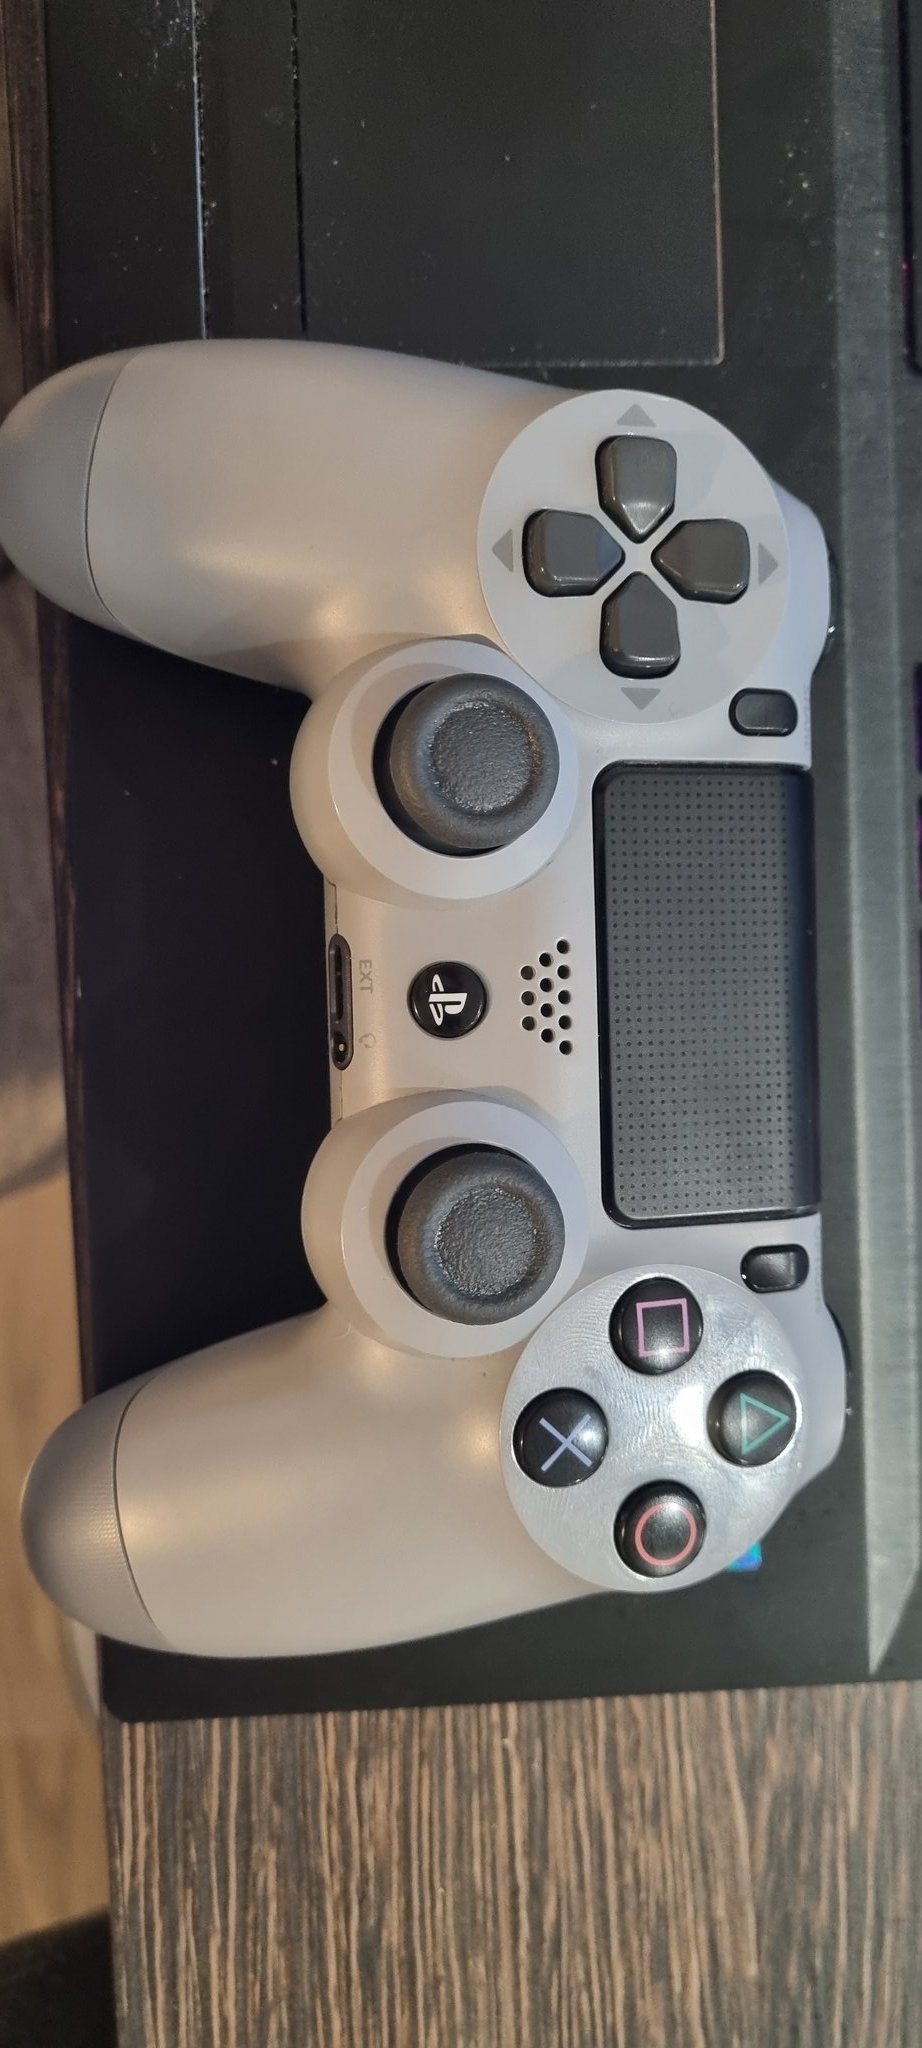 Controller PS4 dualshock fake